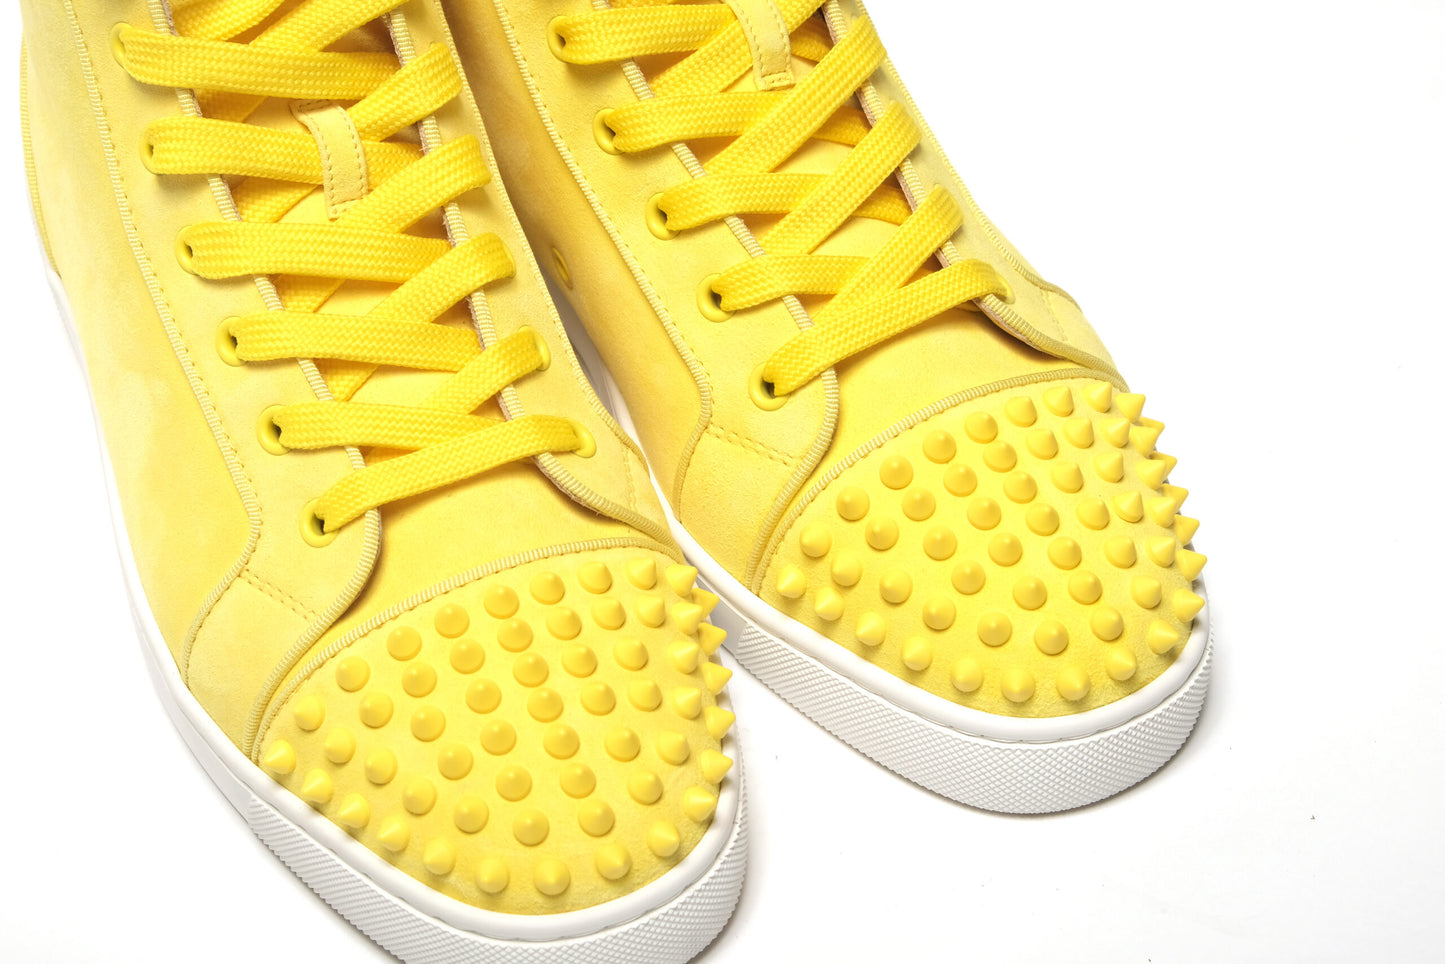 Citronnade/Citronnade Mat Lou Spikes Shoes